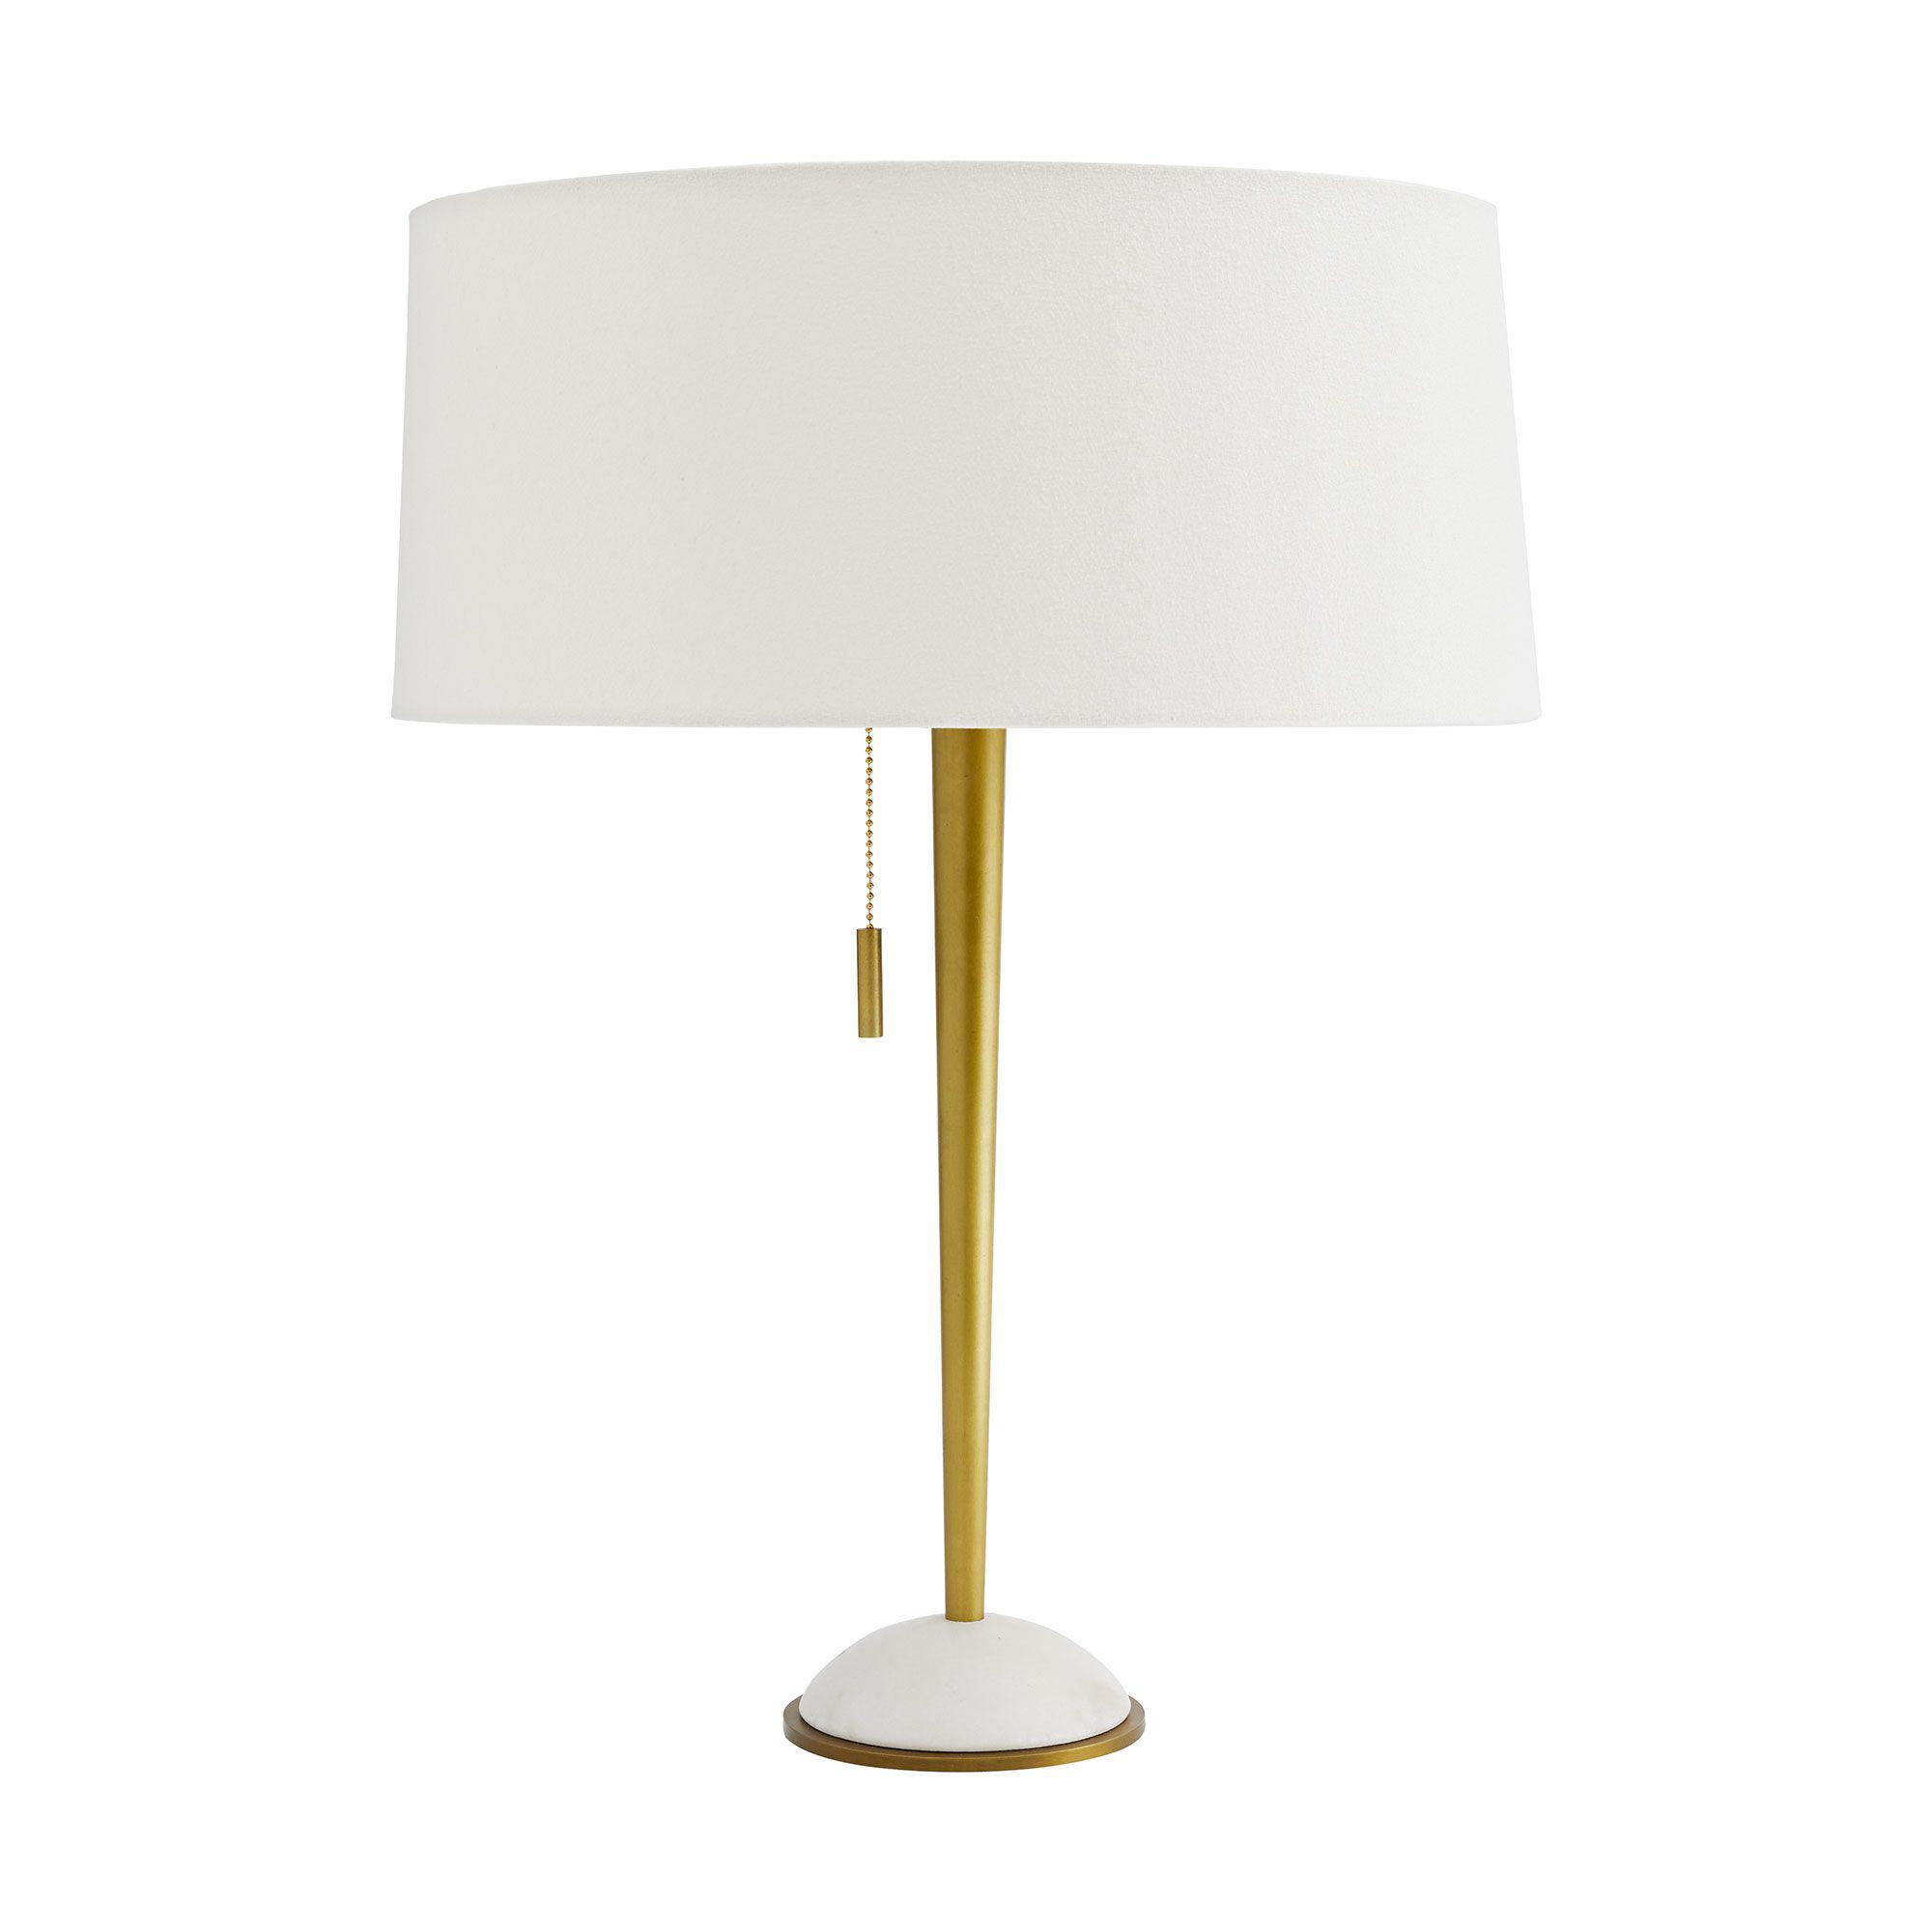 Купить Настольная лампа Grana Lamp в интернет-магазине roooms.ru